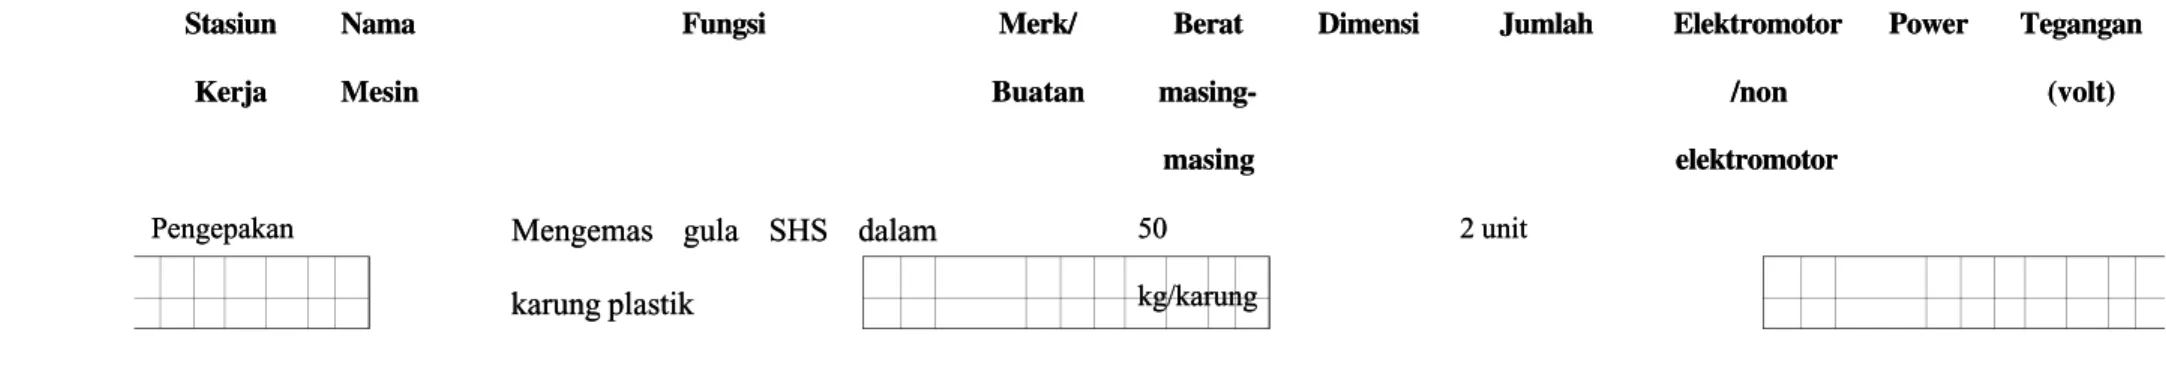 Tabel 2.2. Spesifikasi Mesin Produksi PTP. Nusantara II Pabrik Gula K